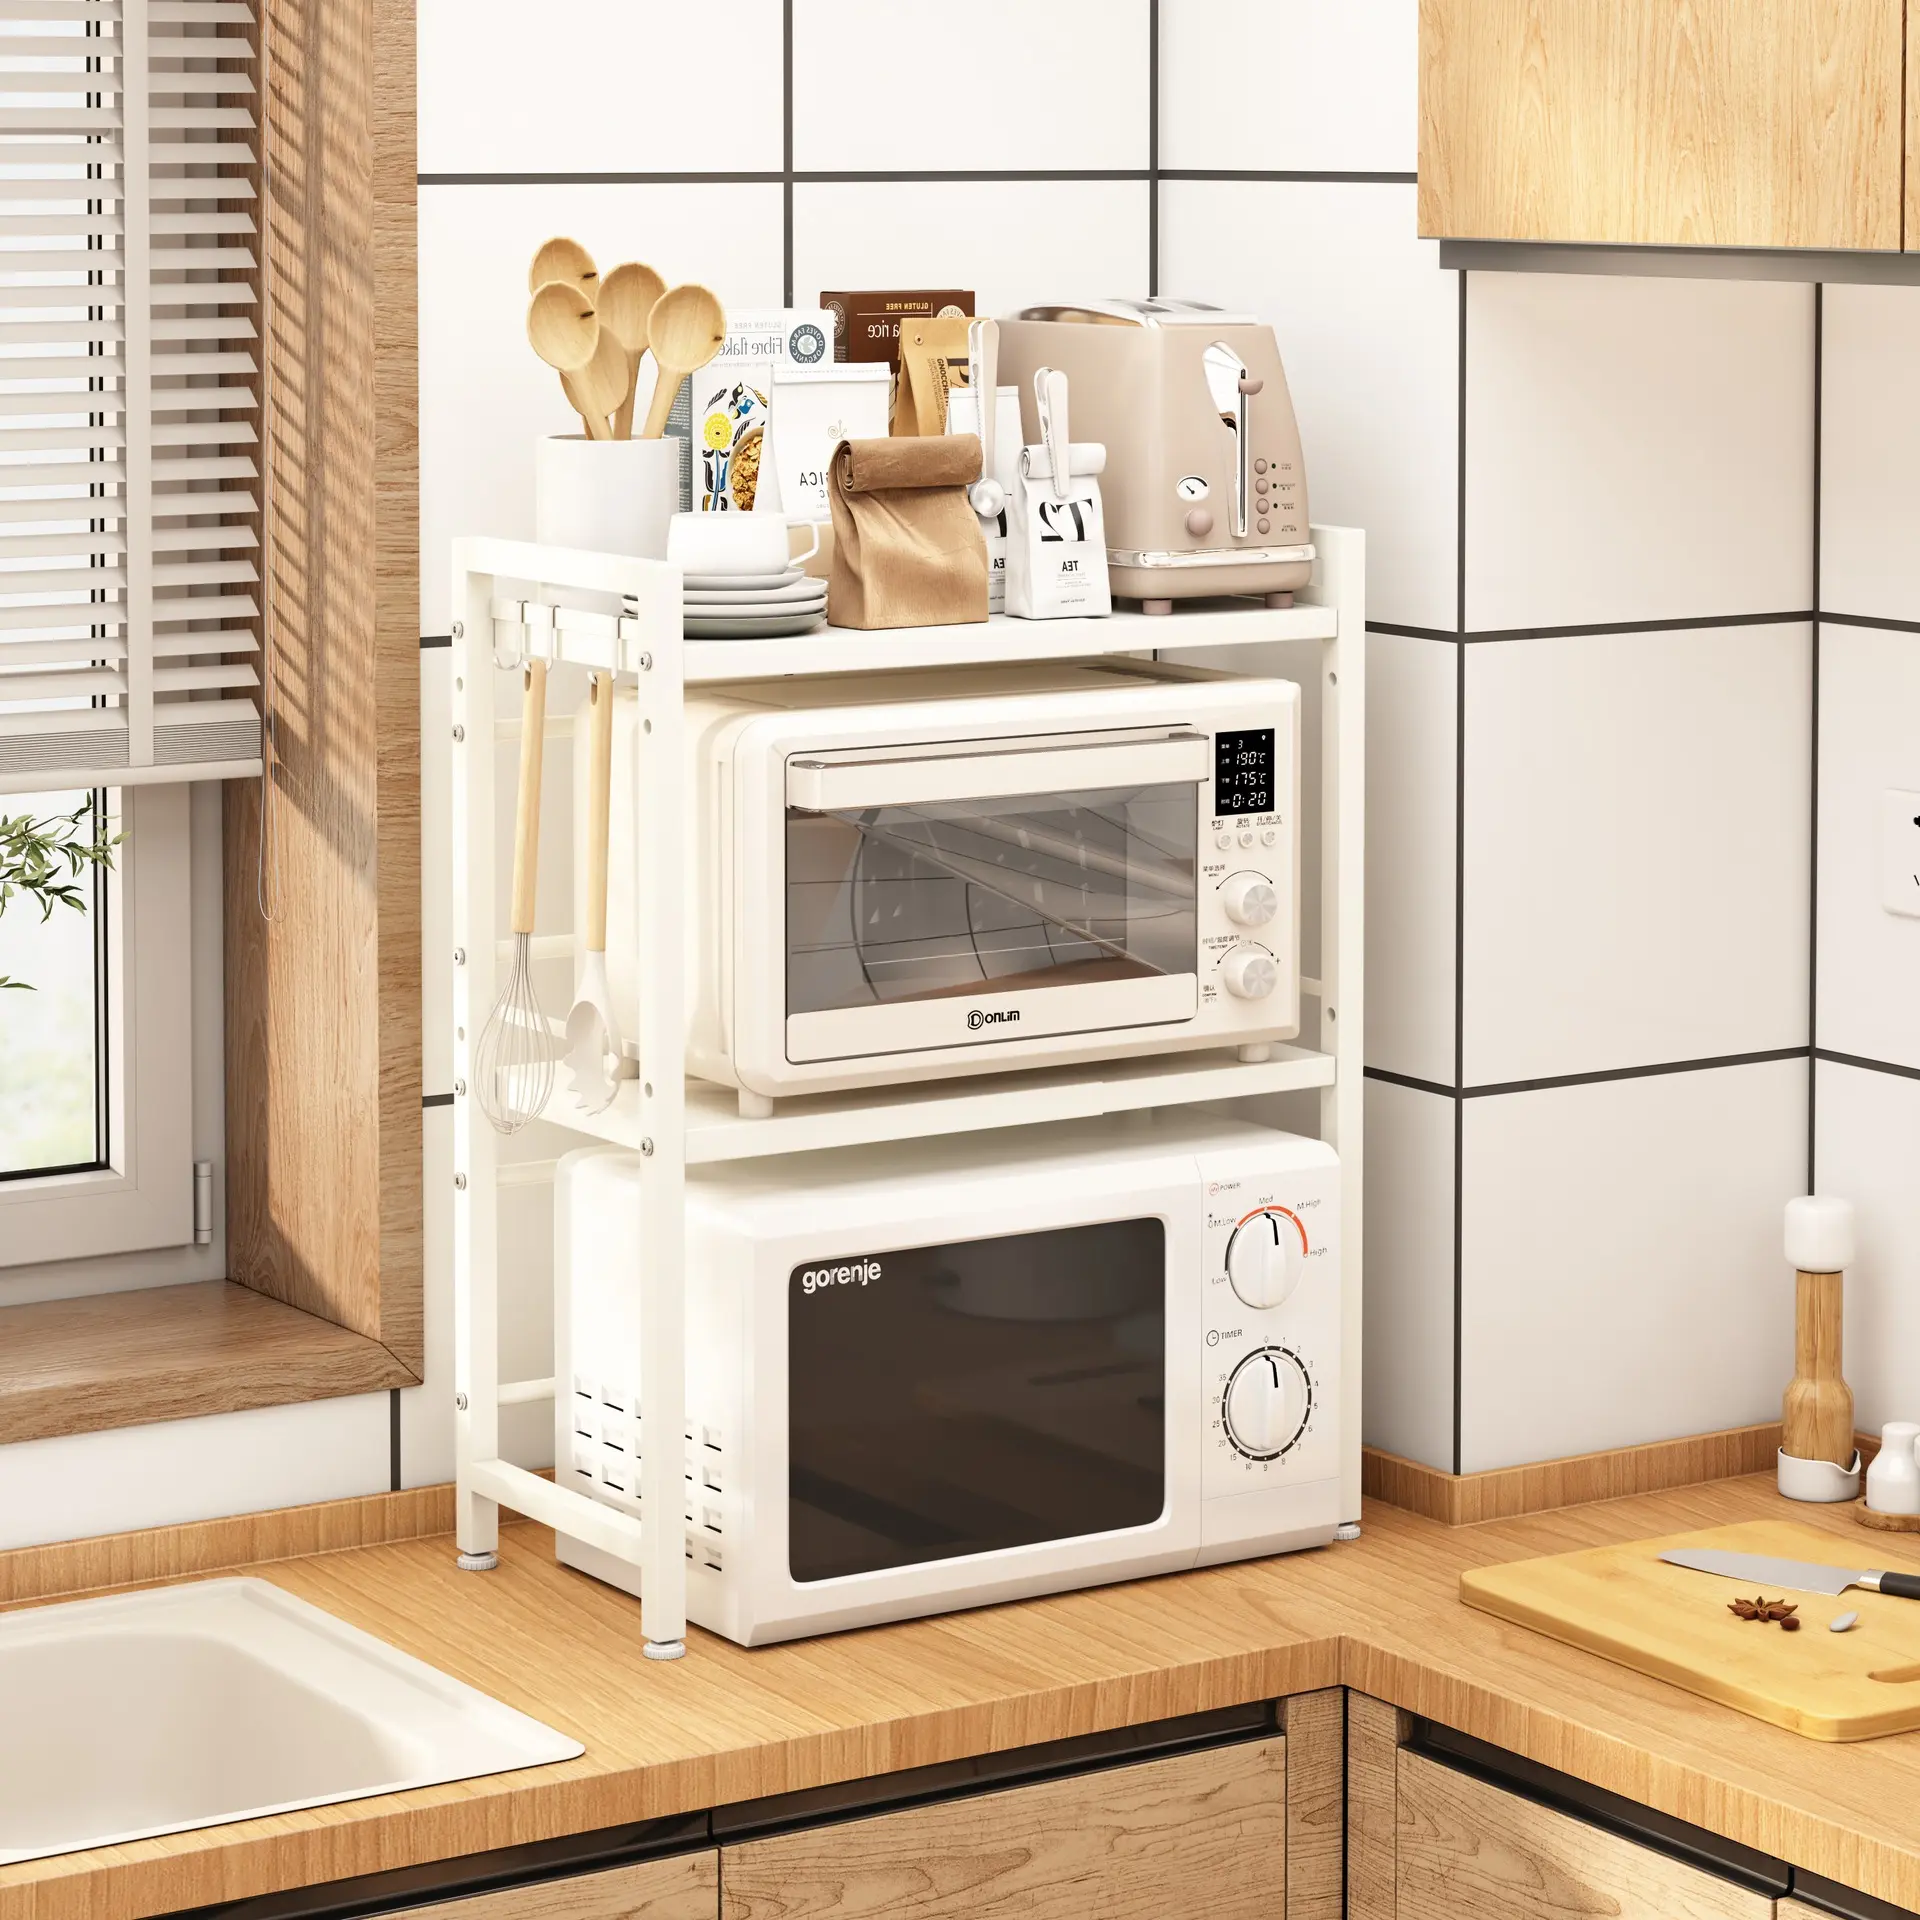 キッチン収納オーガナイザー電子レンジコーヒーメーカーオーガナイザー簡単に取り付け可能なキッチン棚ラック